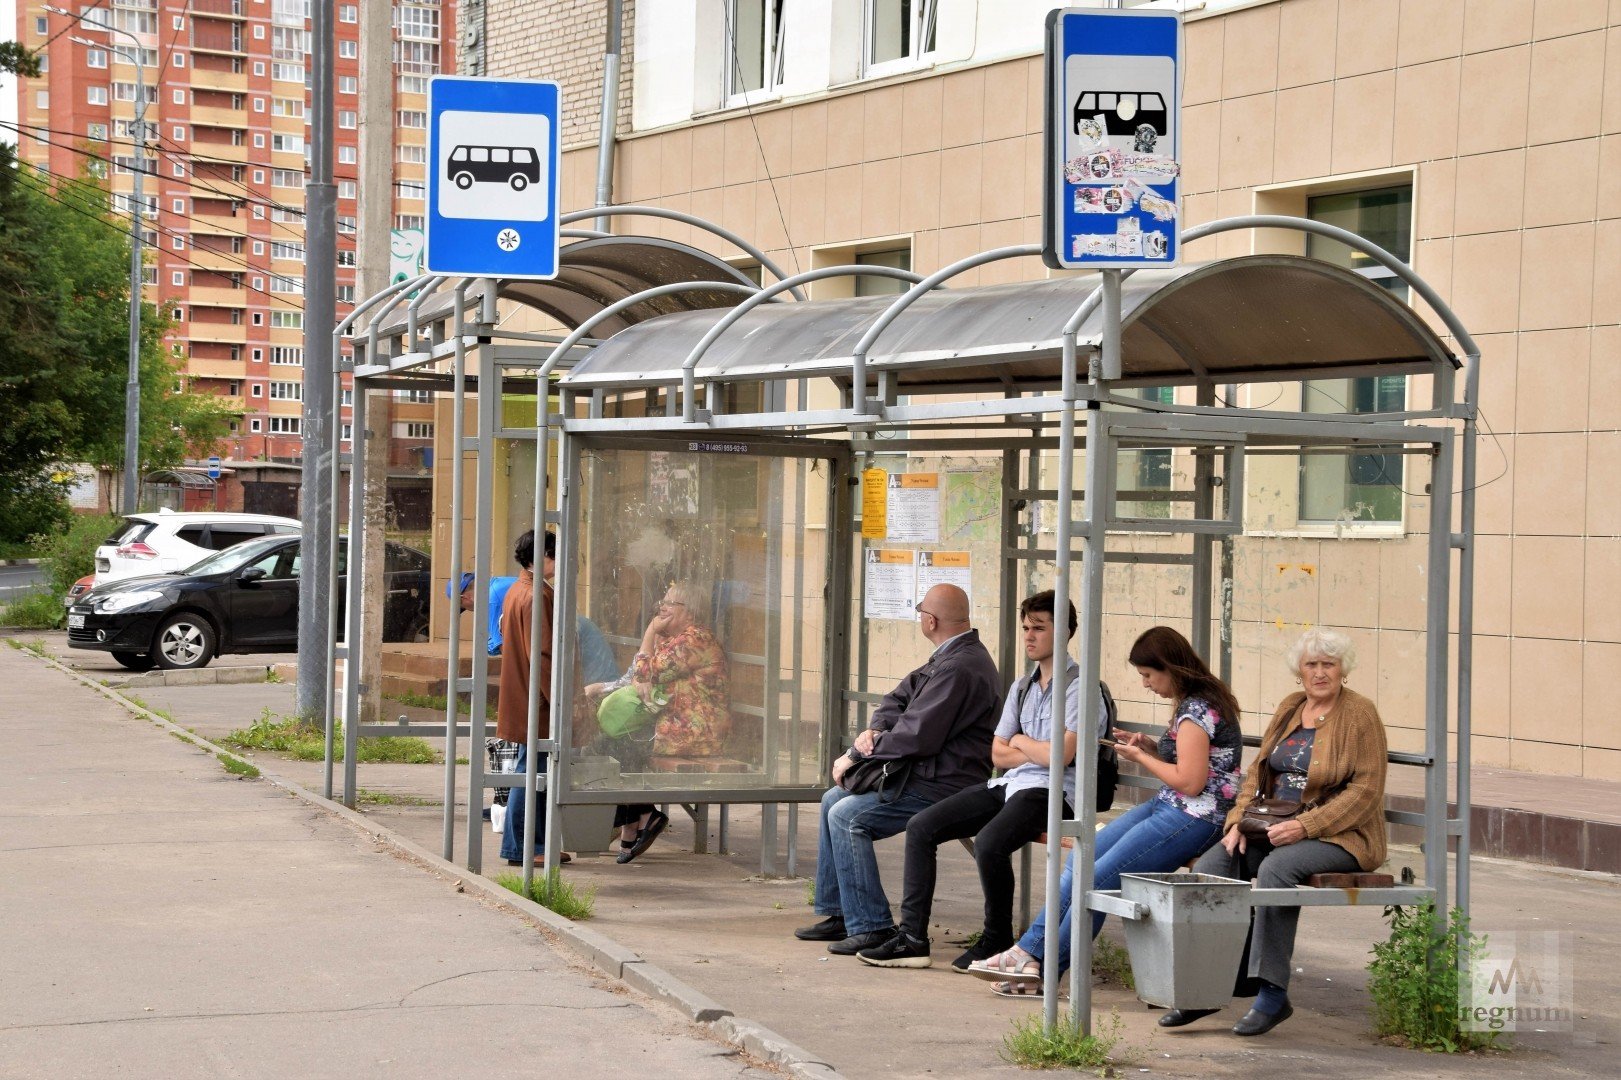 Ост общественного транспорта. Автобусная остановка. Автоюбусная остановка. Автобусная остановка в России. Остановка общественного траспорта.